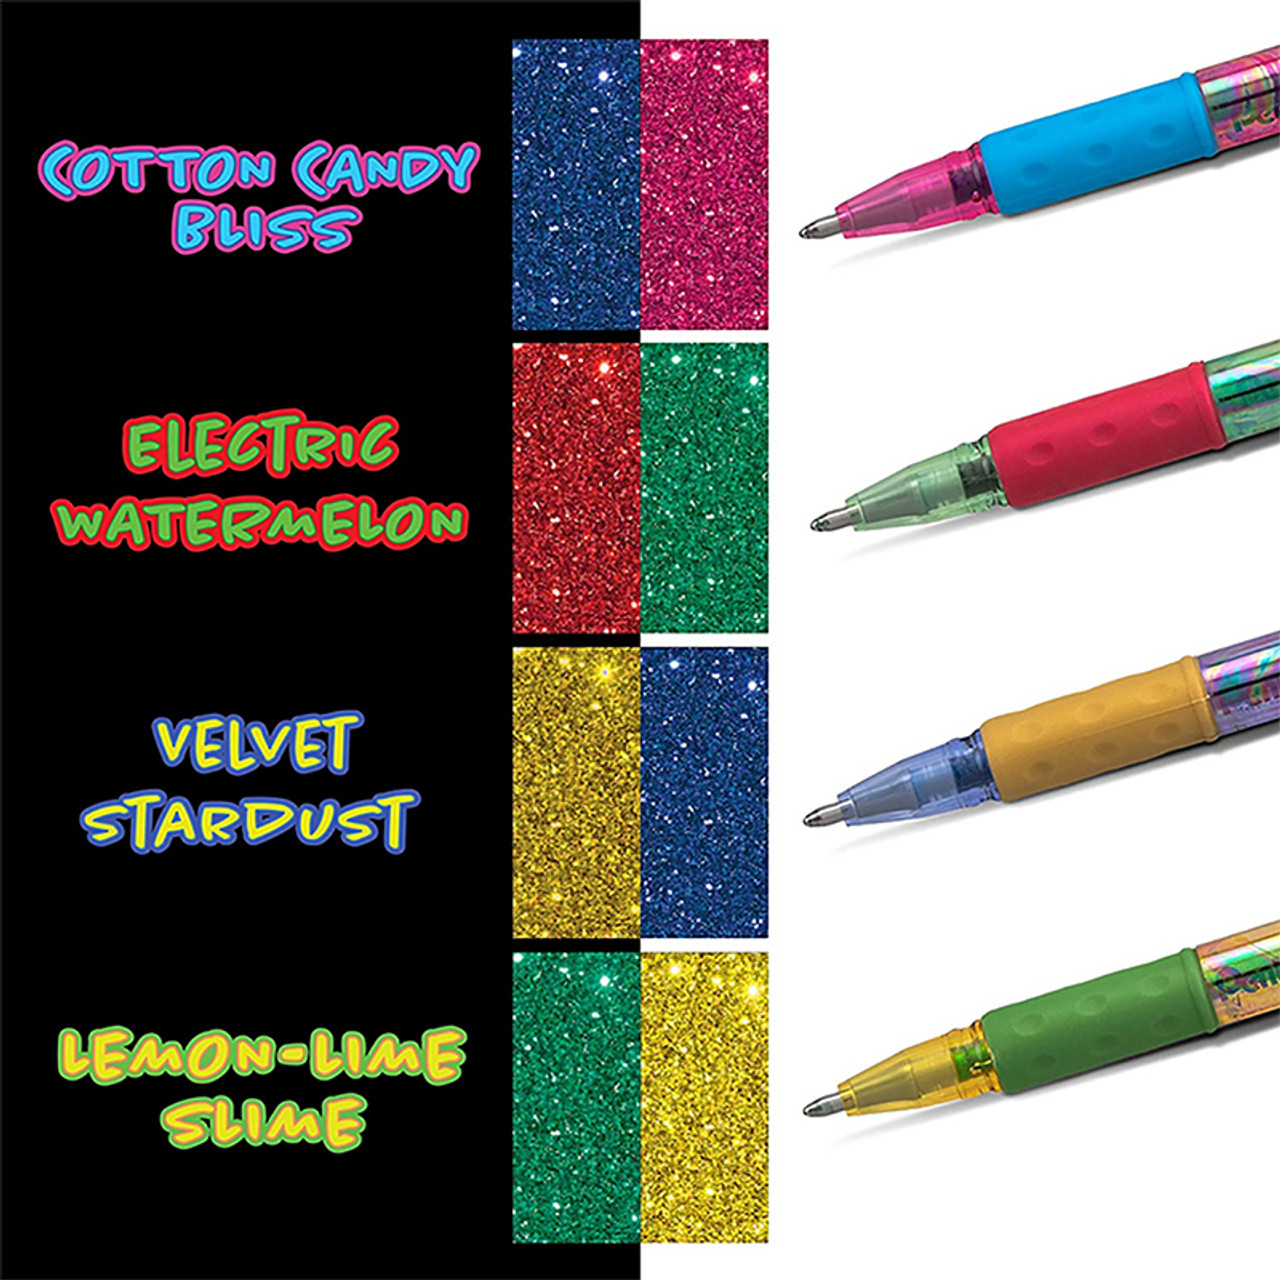 Pentel Sparkle Pop Complete Color Set